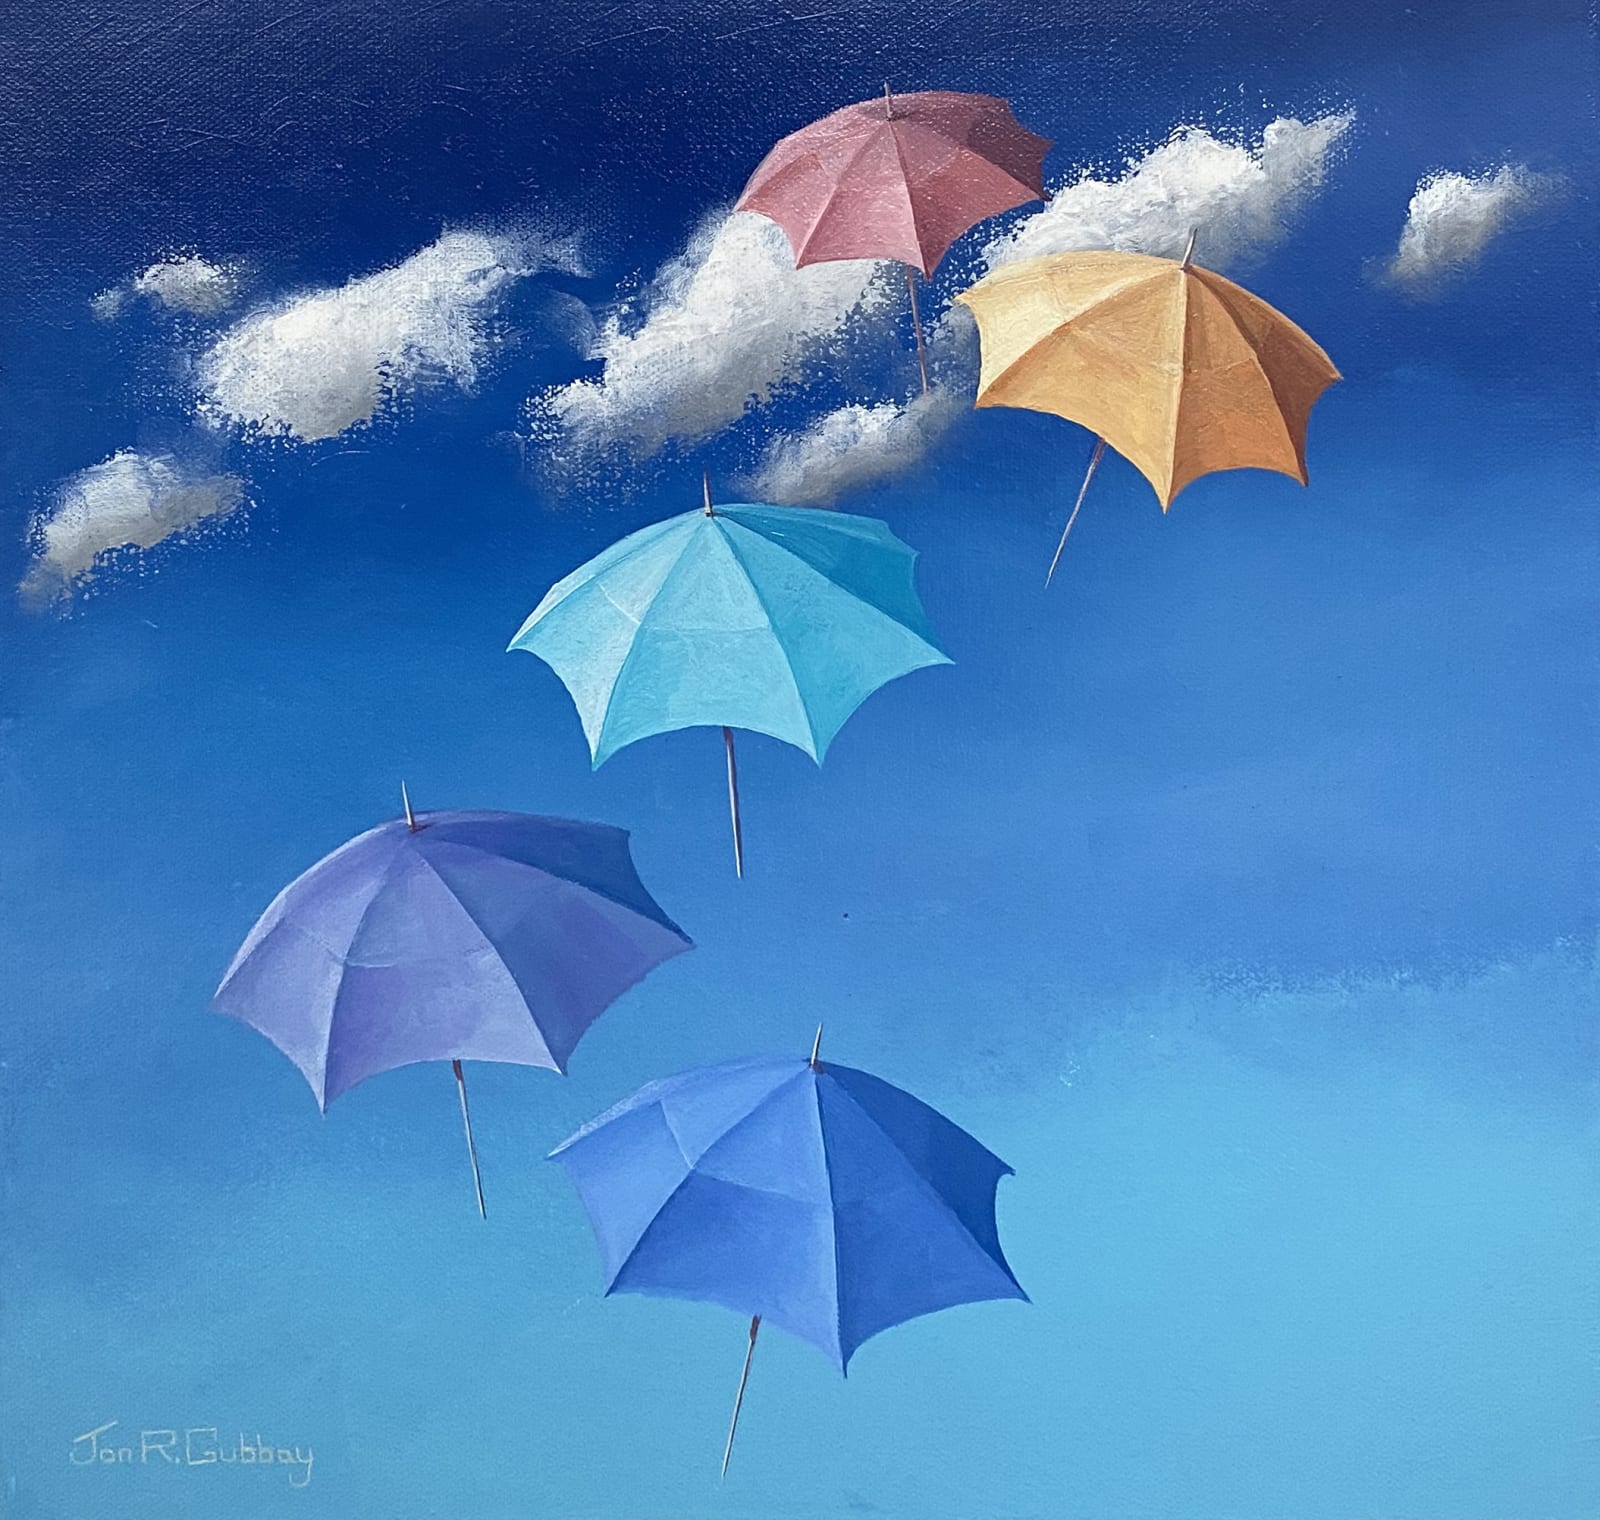 JON GUBBAY, Umbrella Summer